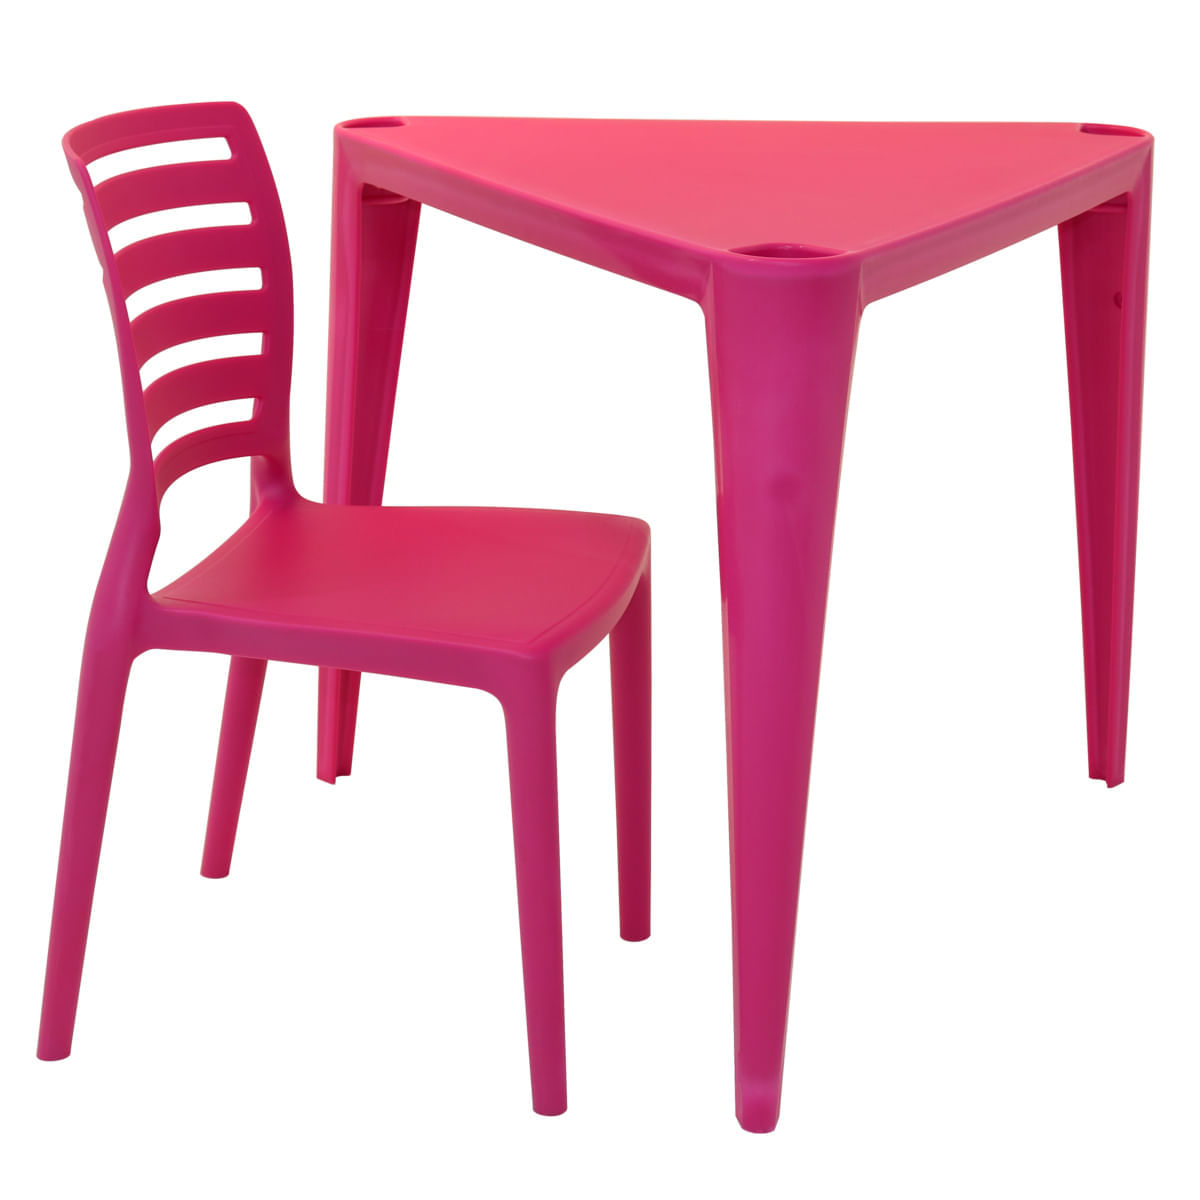 Conjunto de Mesa e Cadeira Tramontina Sofia Infantil Rosa em Polipropileno e Fibra de Vidro 2 Peças